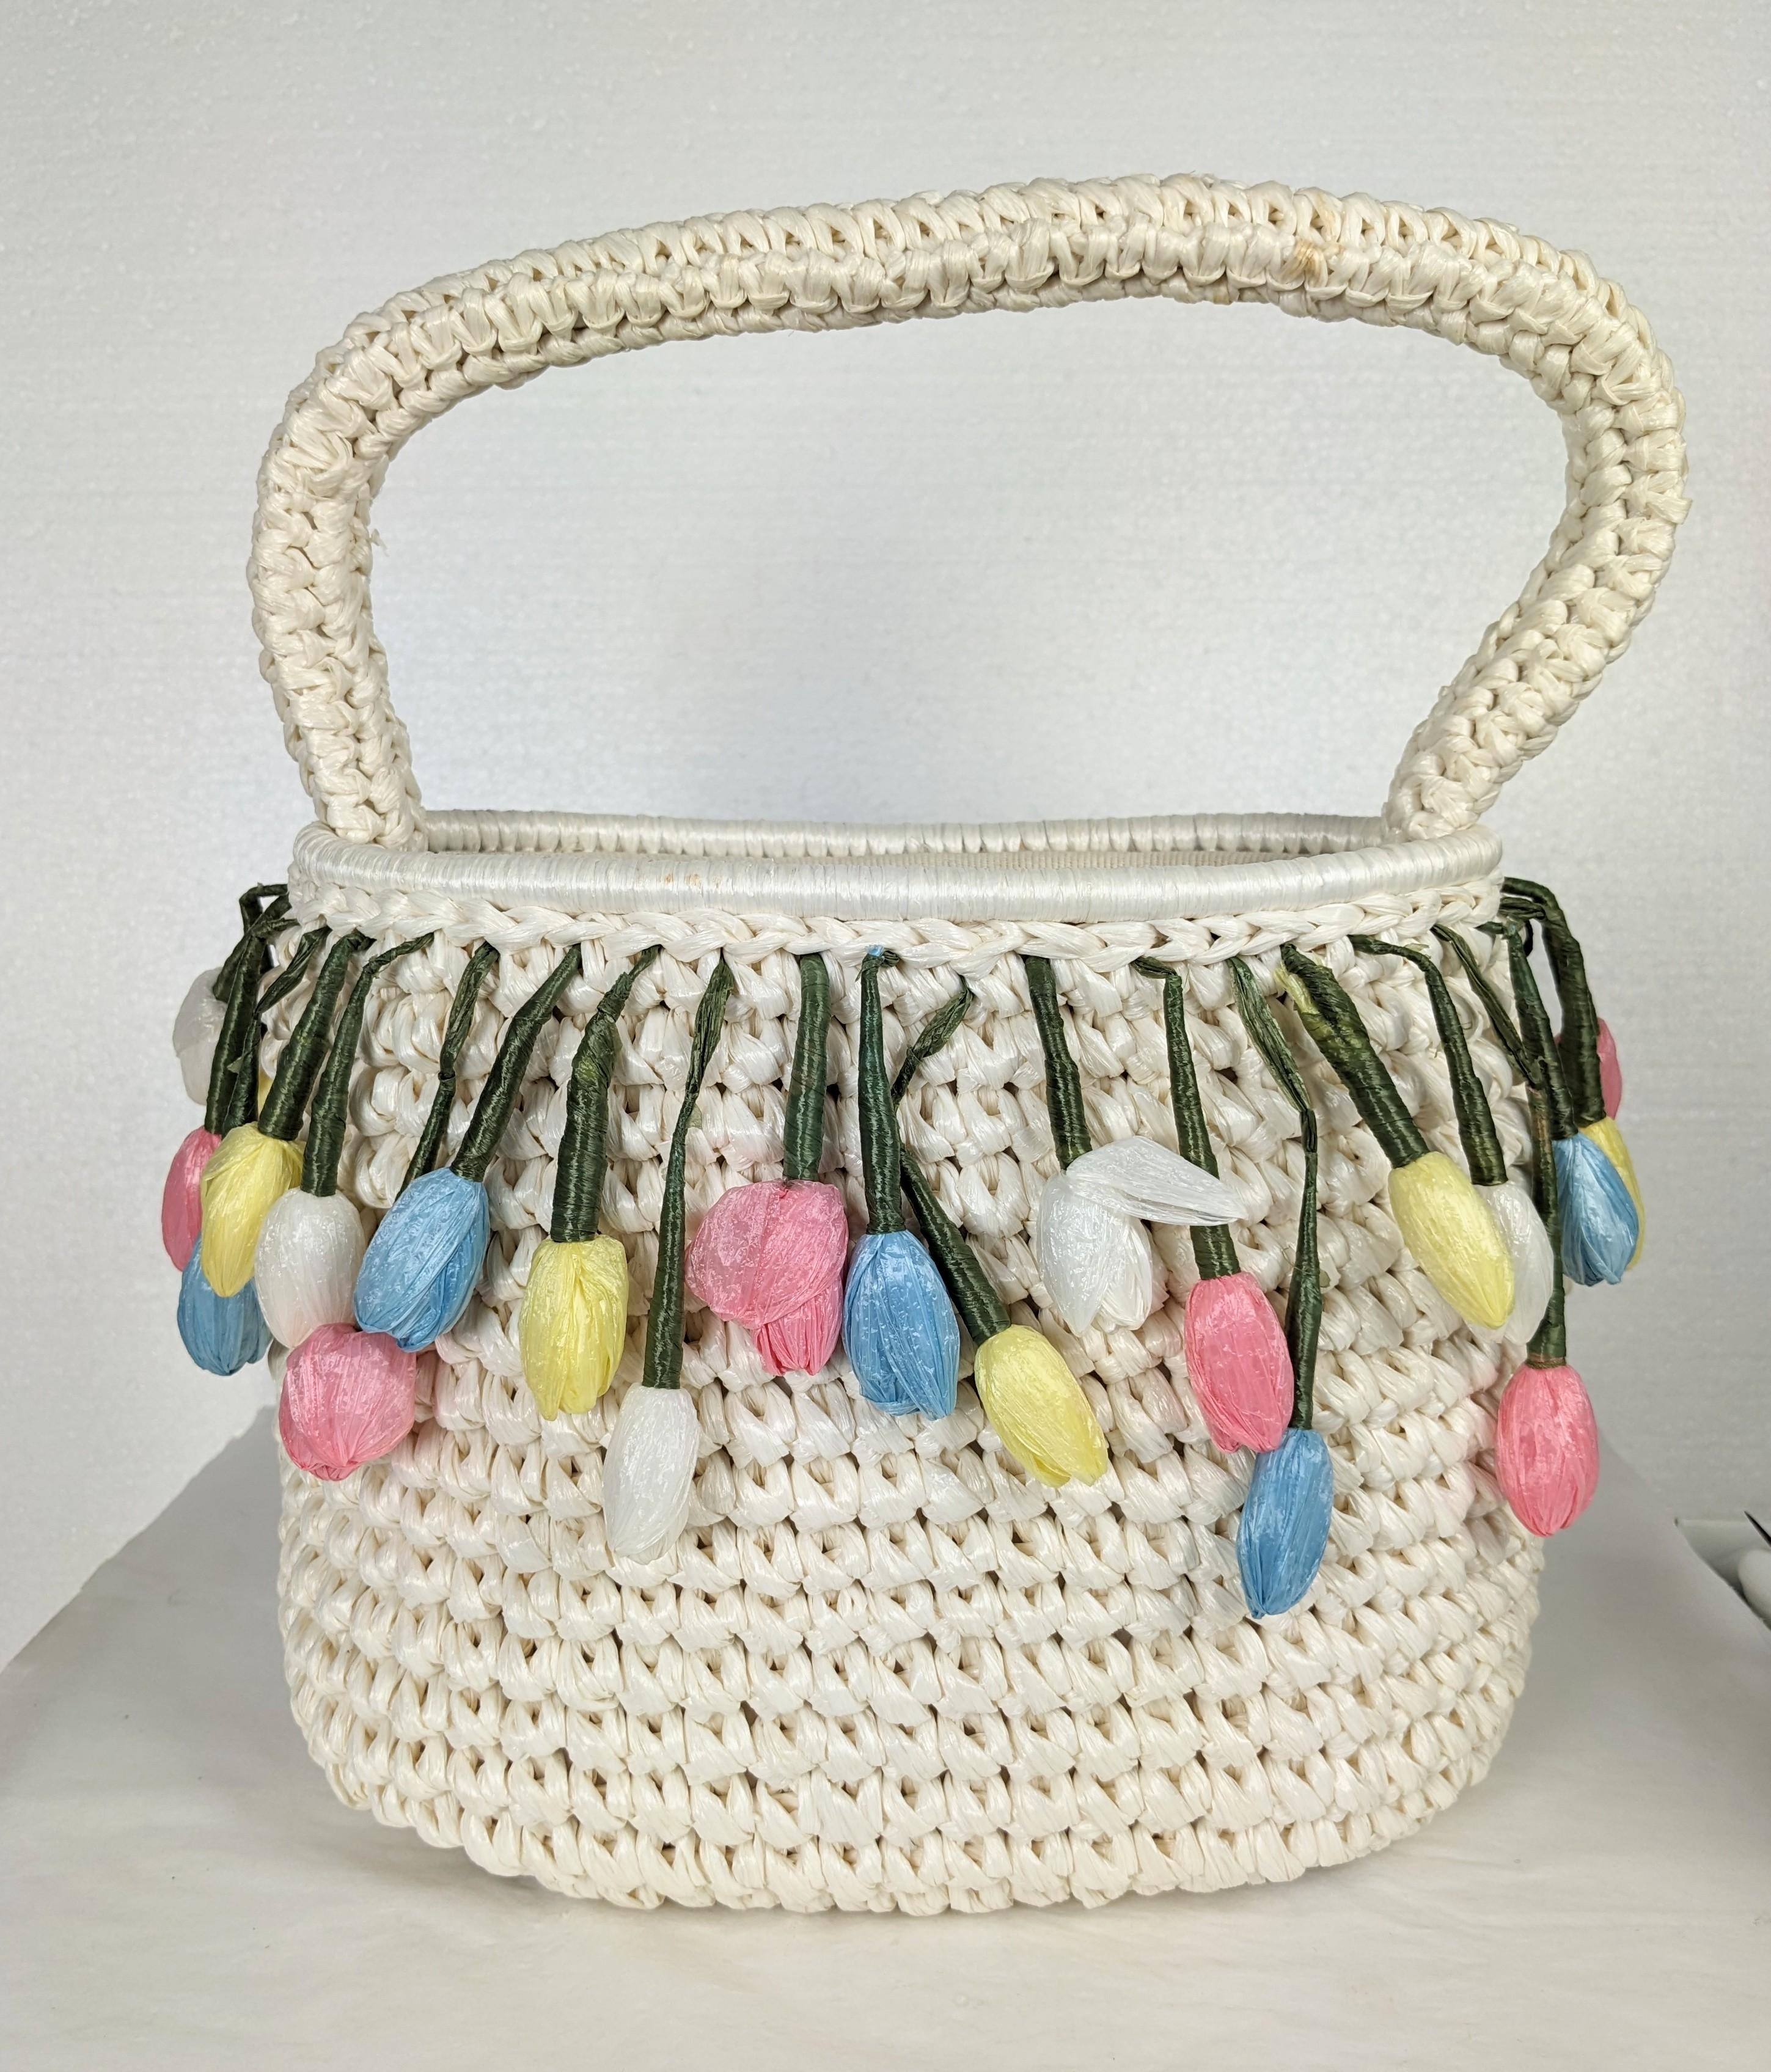 Charmant sac à main en raphia et paille à fleurs des années 1960. Fabriqué à la main au Japon pour l'exportation, ce sac semble ne pas avoir été utilisé. Les boutons pastel pendants sont tous réalisés à la main avec de la paille de raphia le long du